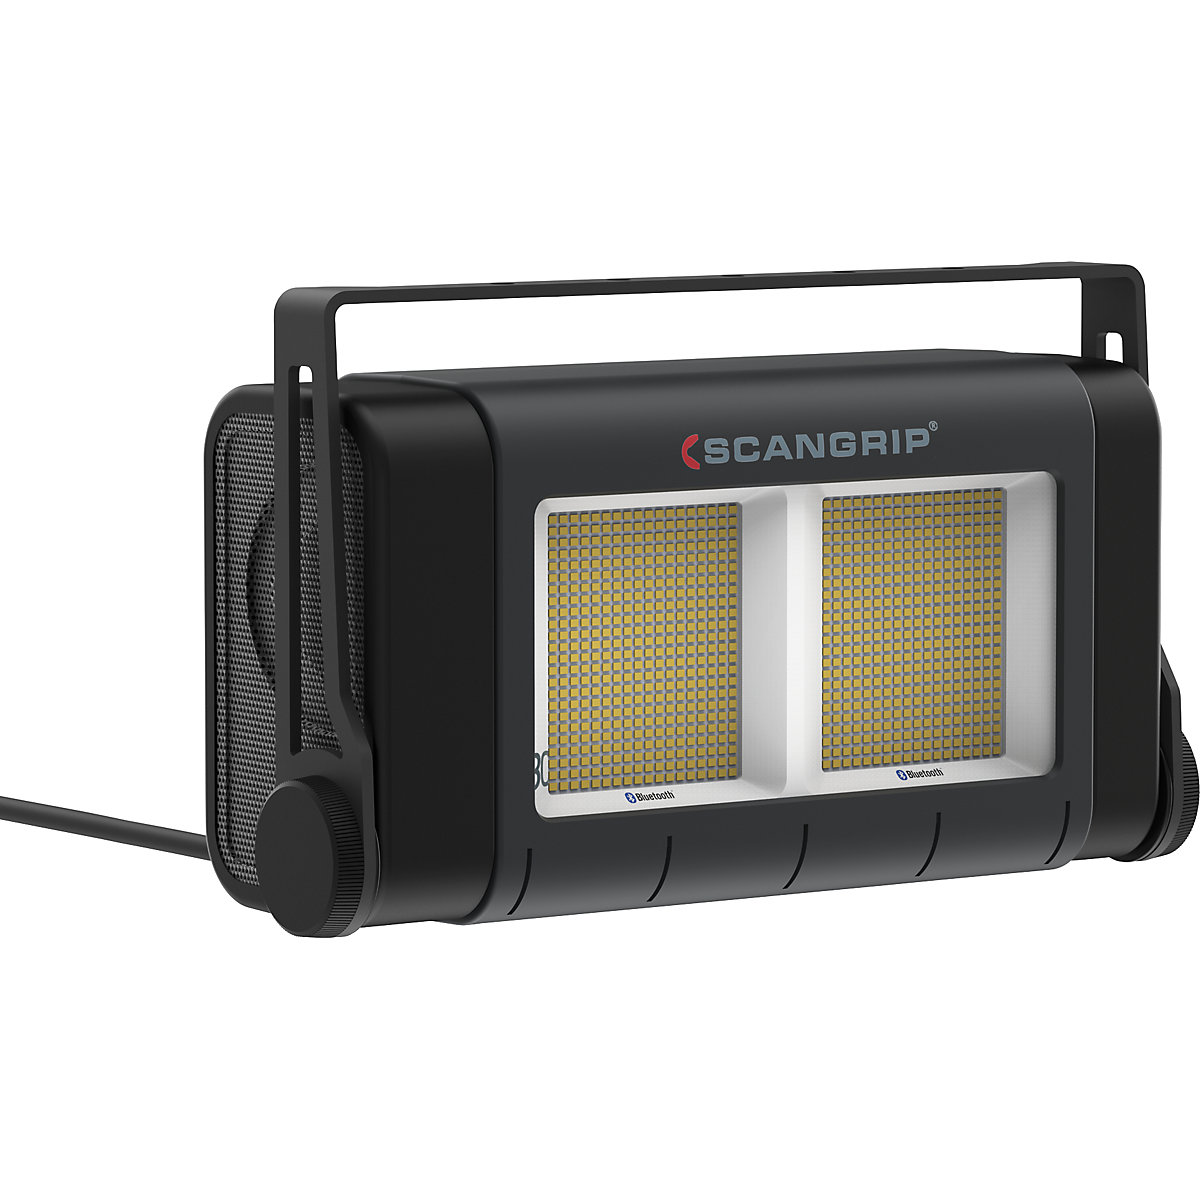 SITE LIGHT 80 LED-es reflektor építkezésekre – SCANGRIP